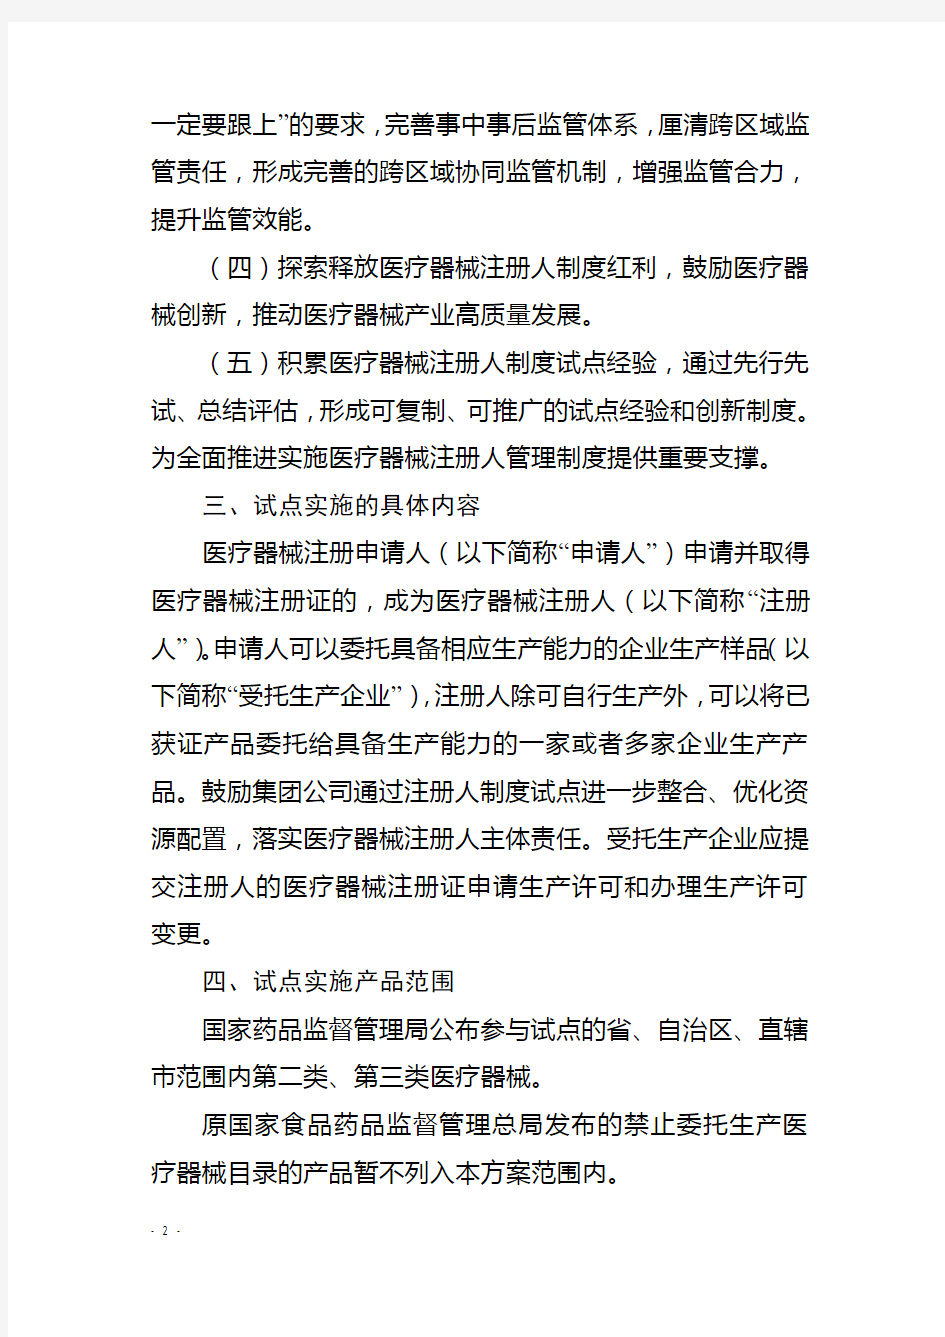 中国(天津)自由贸易试验区内医疗器械注册人制度试点工作